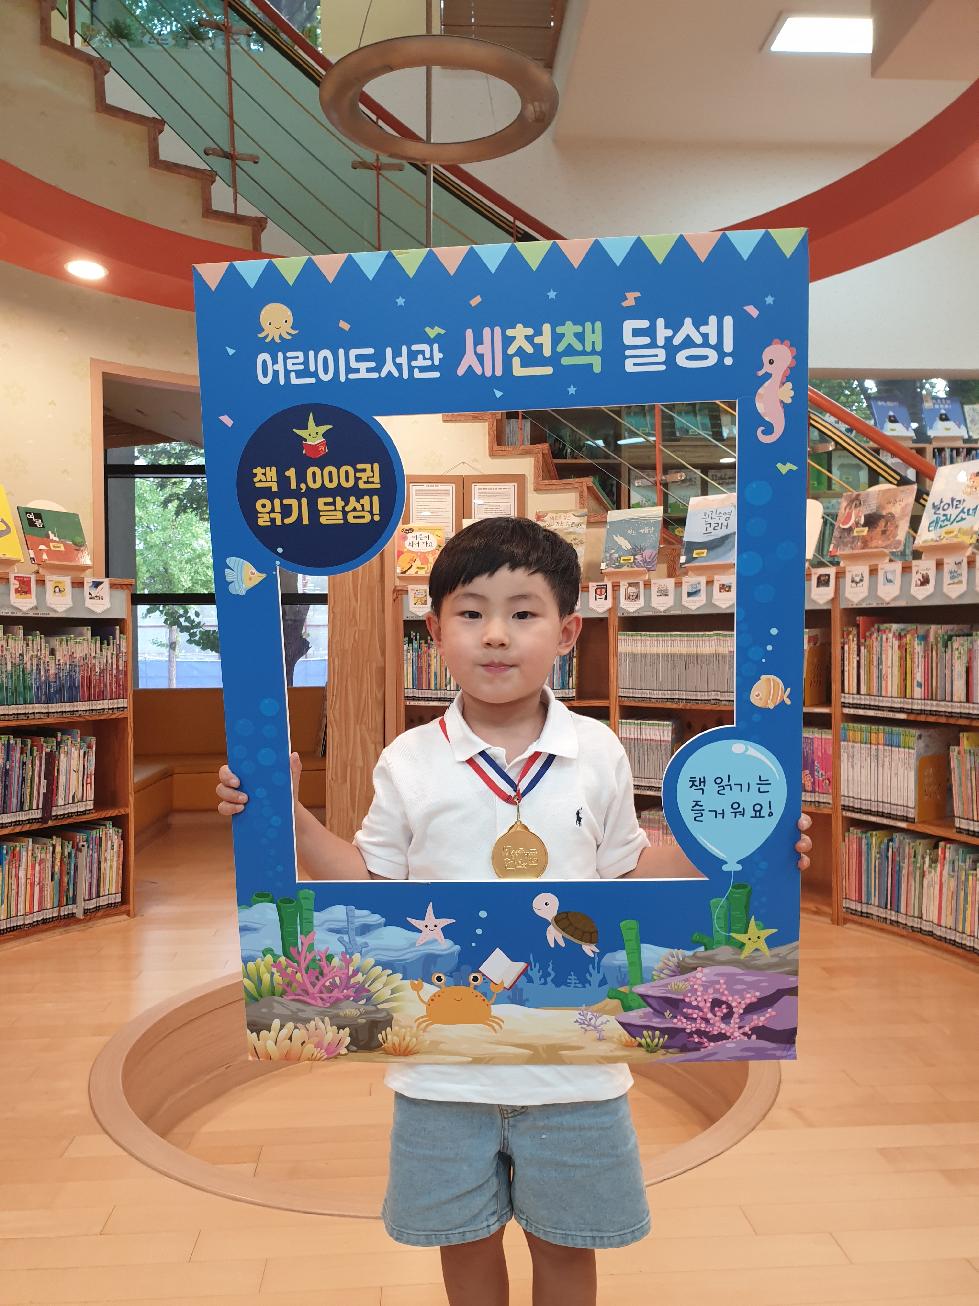 이천시 어린이도서관 세상을 바꿀 천 권의 책 24호 달성 변유준 어린이 